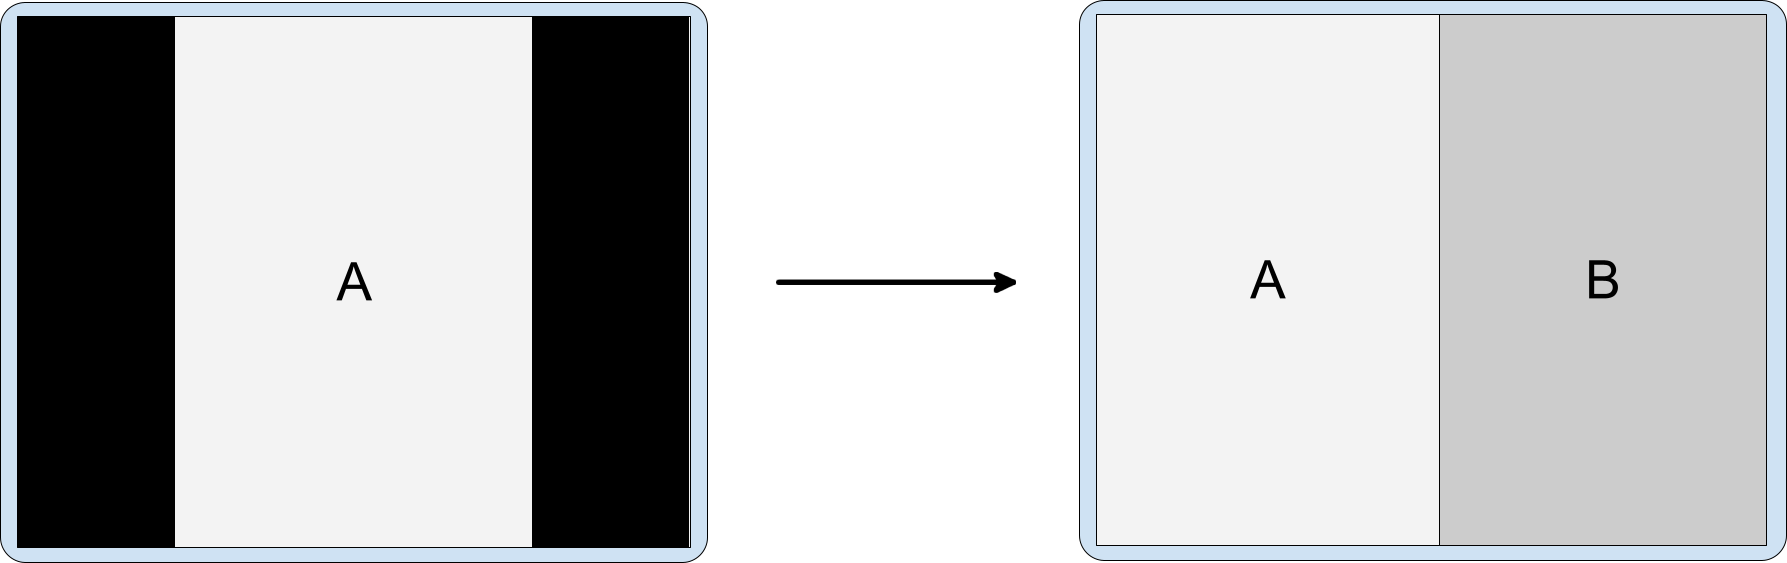 Incorporação de atividades com o app do modo retrato na tela no modo paisagem. A atividade A com efeito letterbox do modo retrato inicia a atividade B incorporada.